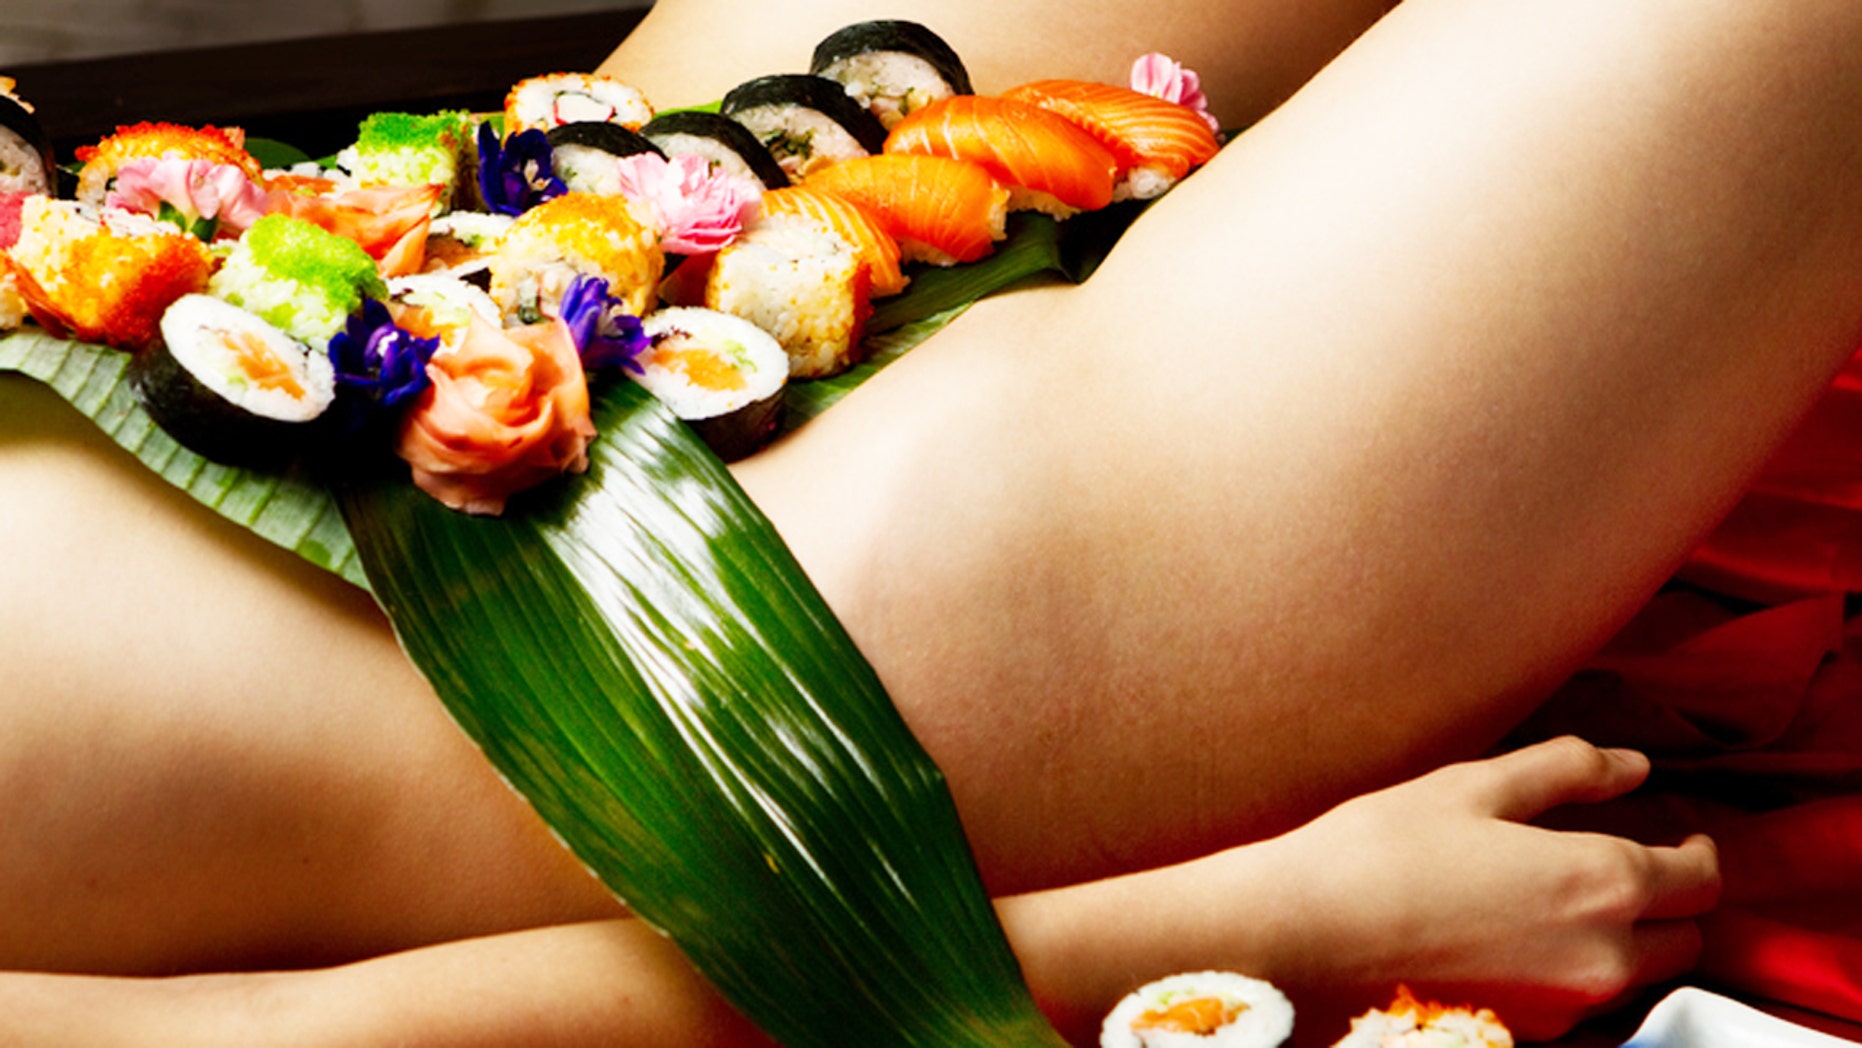 Half Naked Sushi Model Gets Revenge On Frisky Customer Fox News 0269